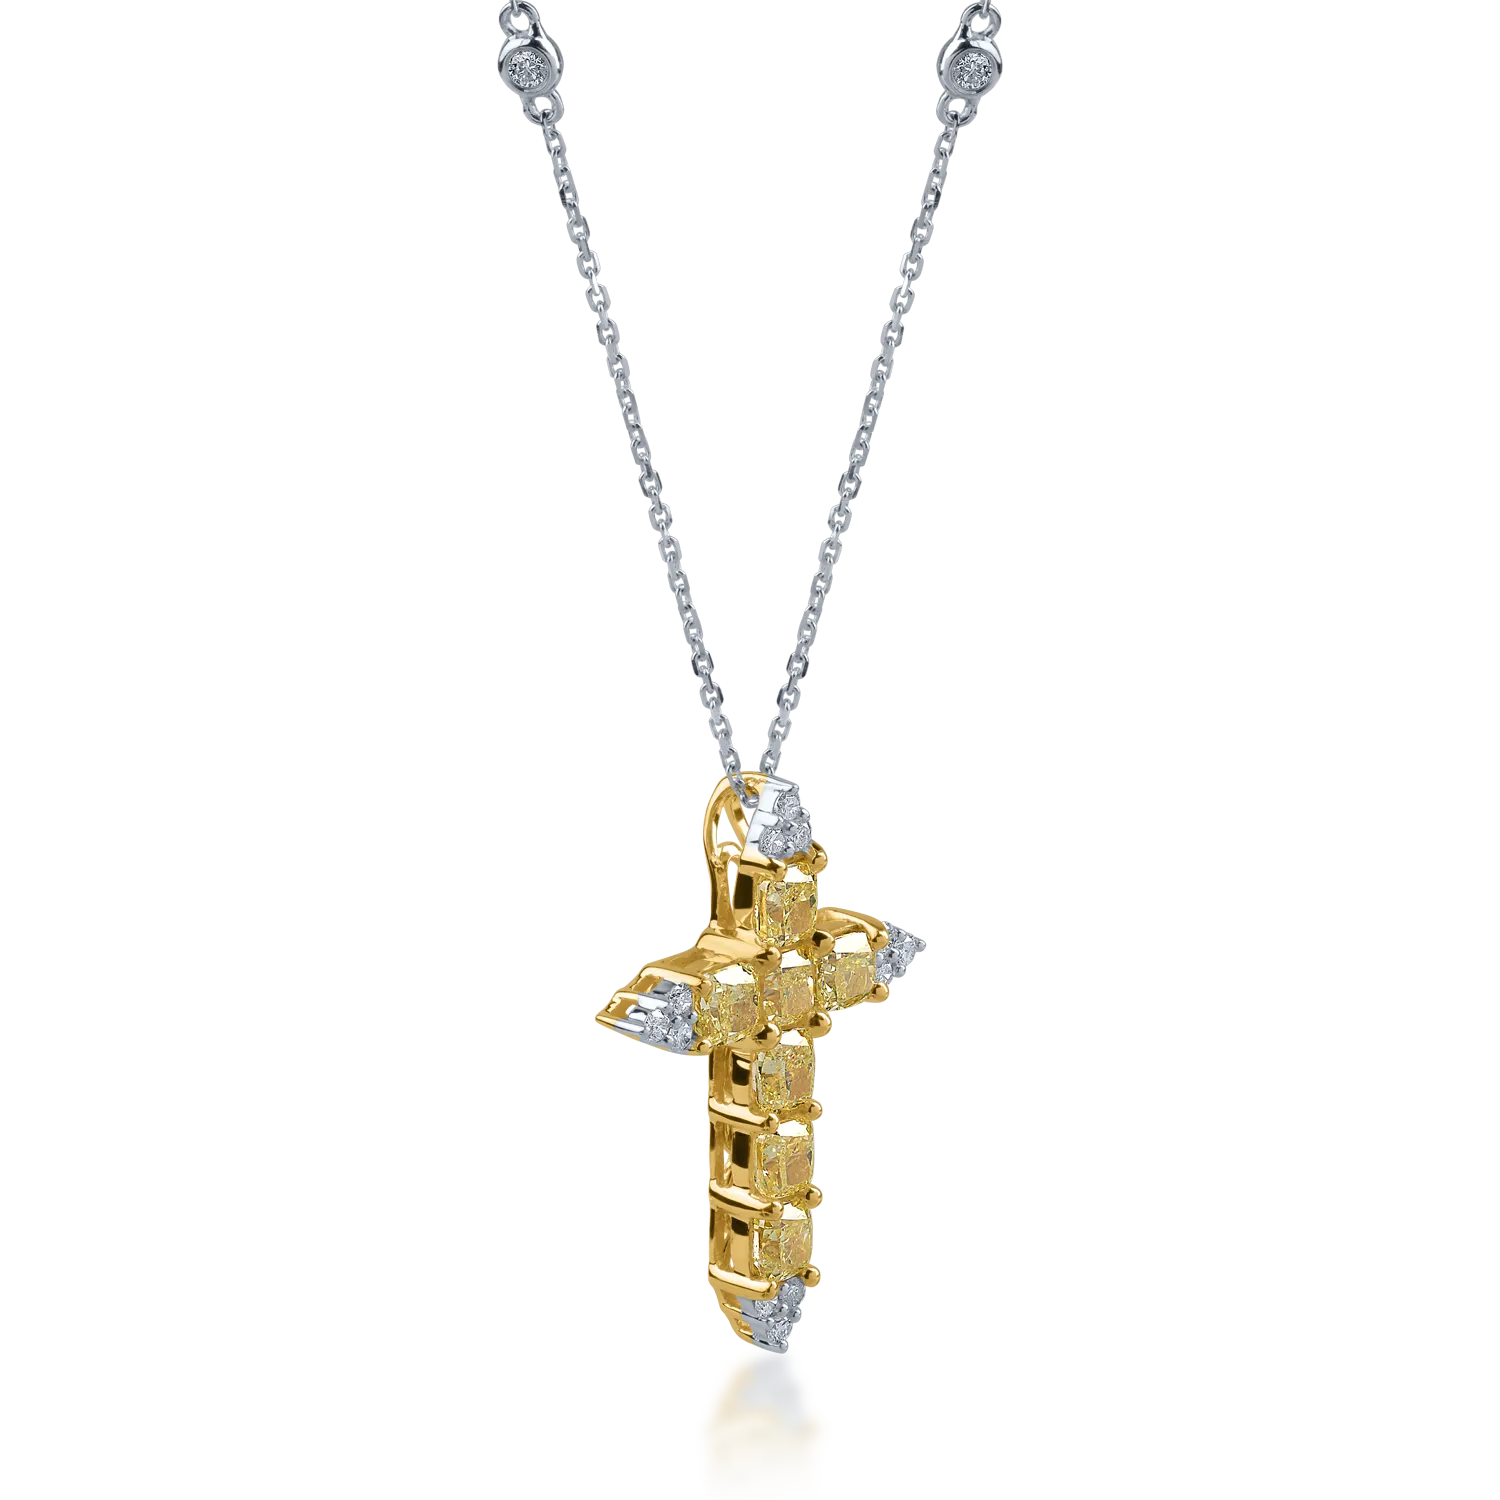 Łańcuszek z krzyżykiem z biało-żółtego złota z diamentami o masie 2.78ct